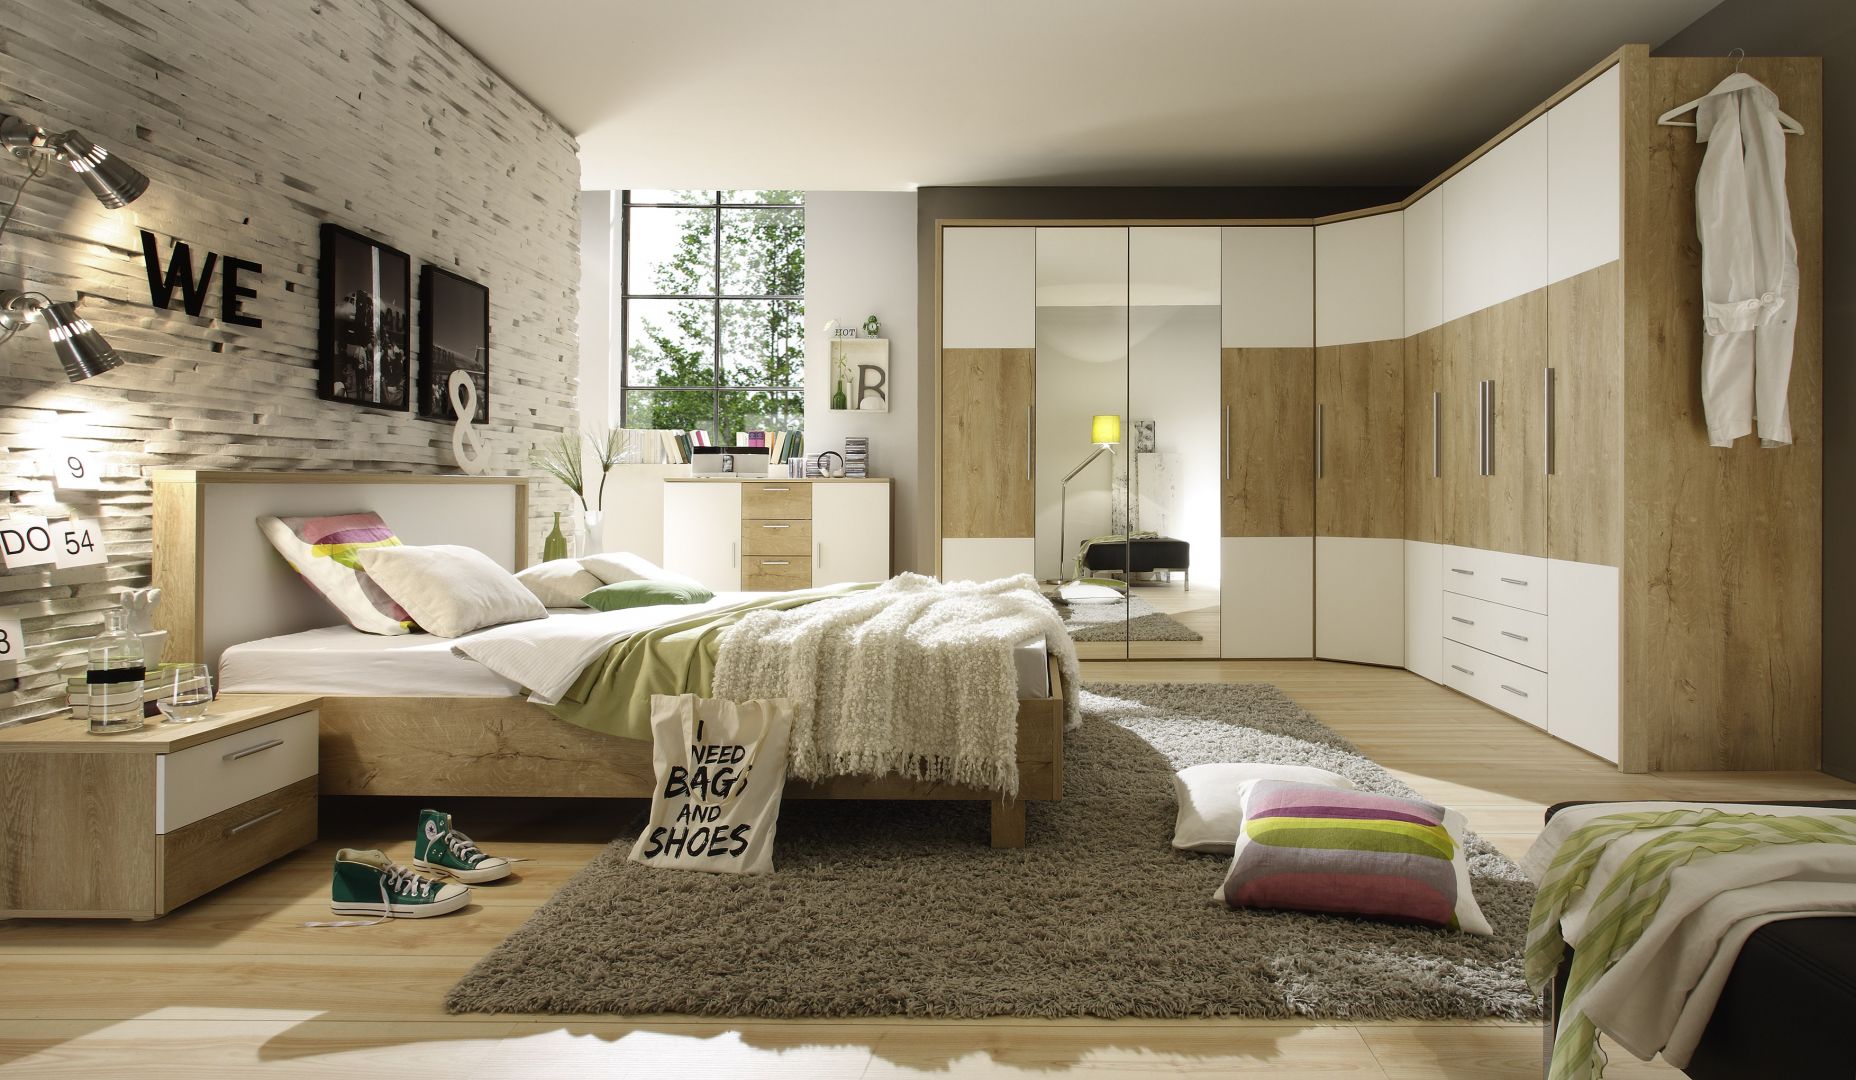 Dużym zainteresowaniem w sypialniach cieszą się m.in. szafy, które można ciekawie zestawiać, tworząc np. kombinacje narożne. Na zdjęciu – sypialnia „Helios” firmy Helvetia Wieruszów. Fot. Archiwum.